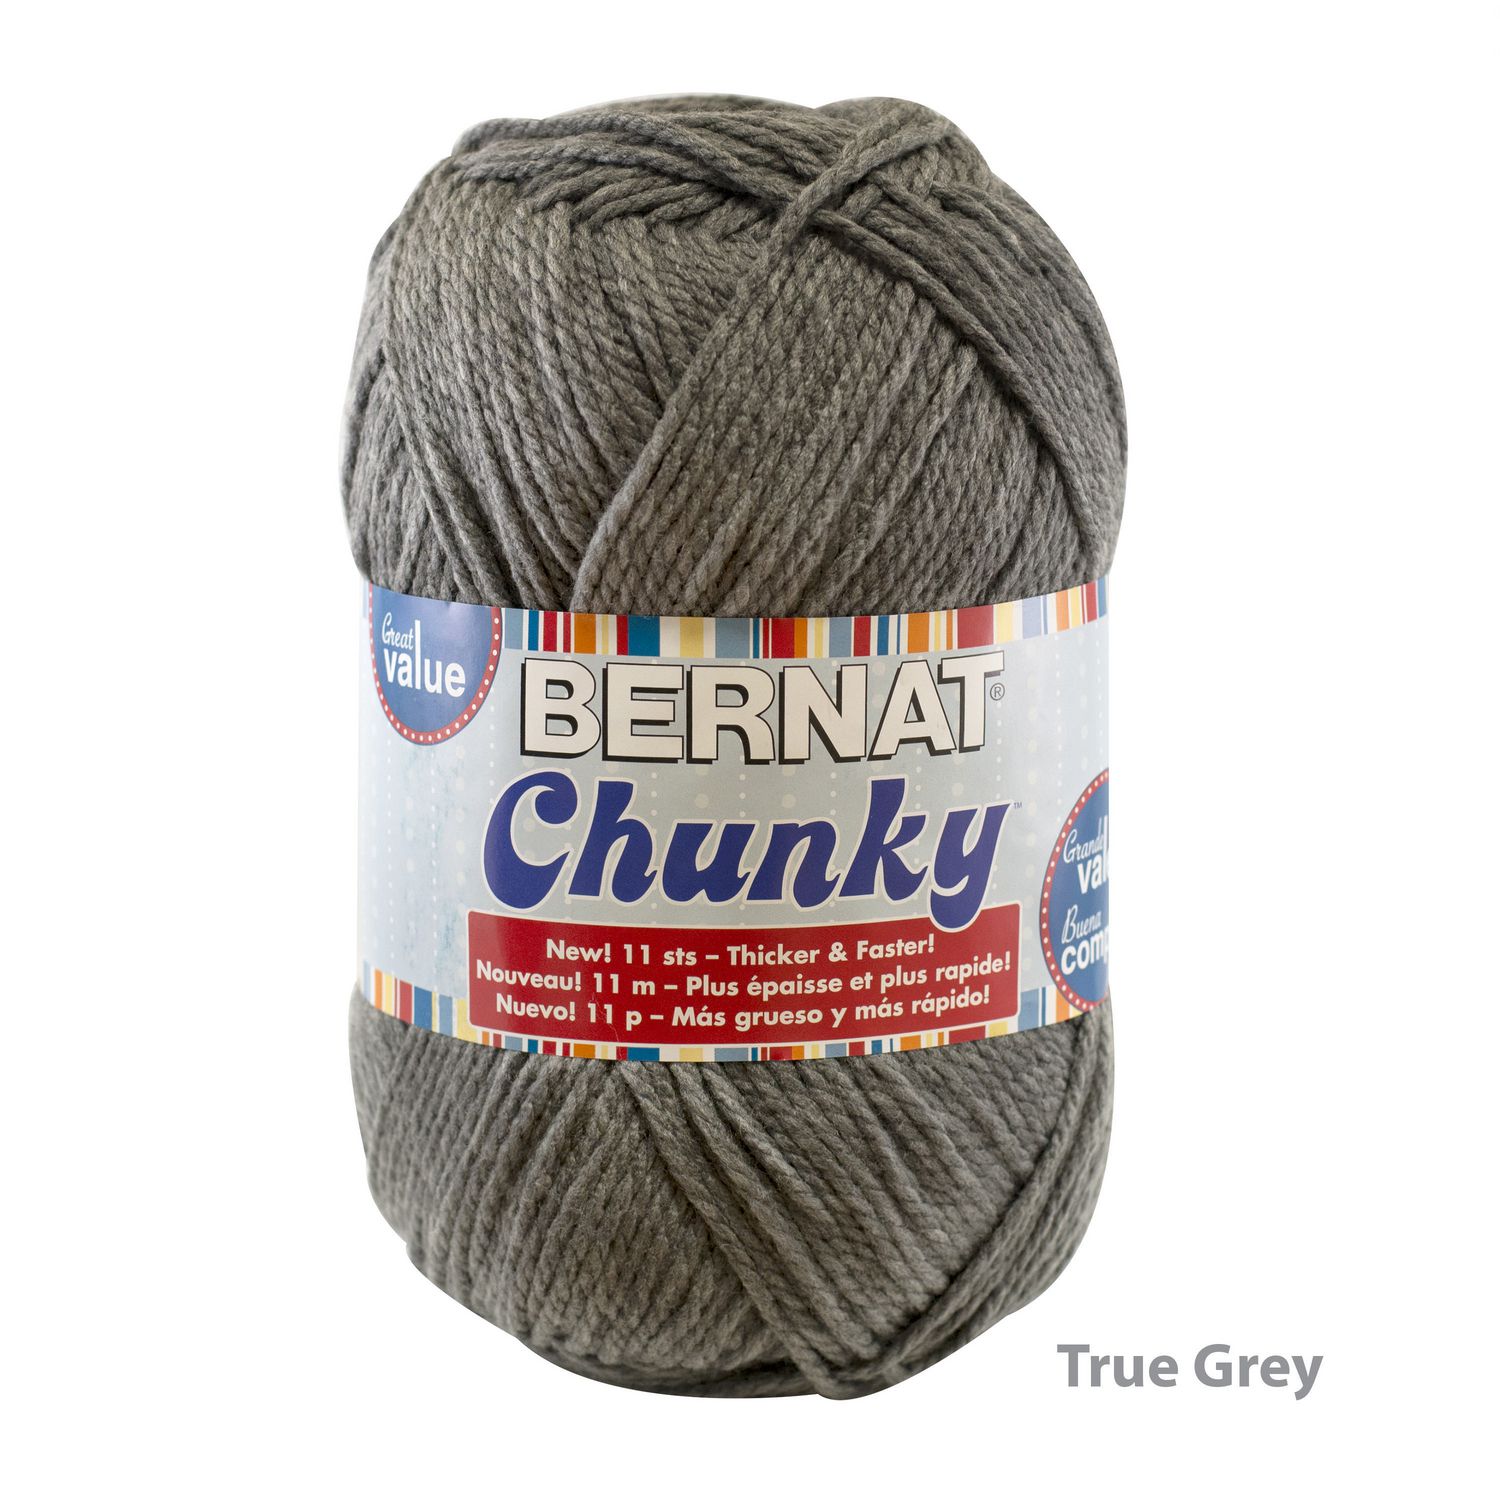 Super Chunky Yarn - Knitca